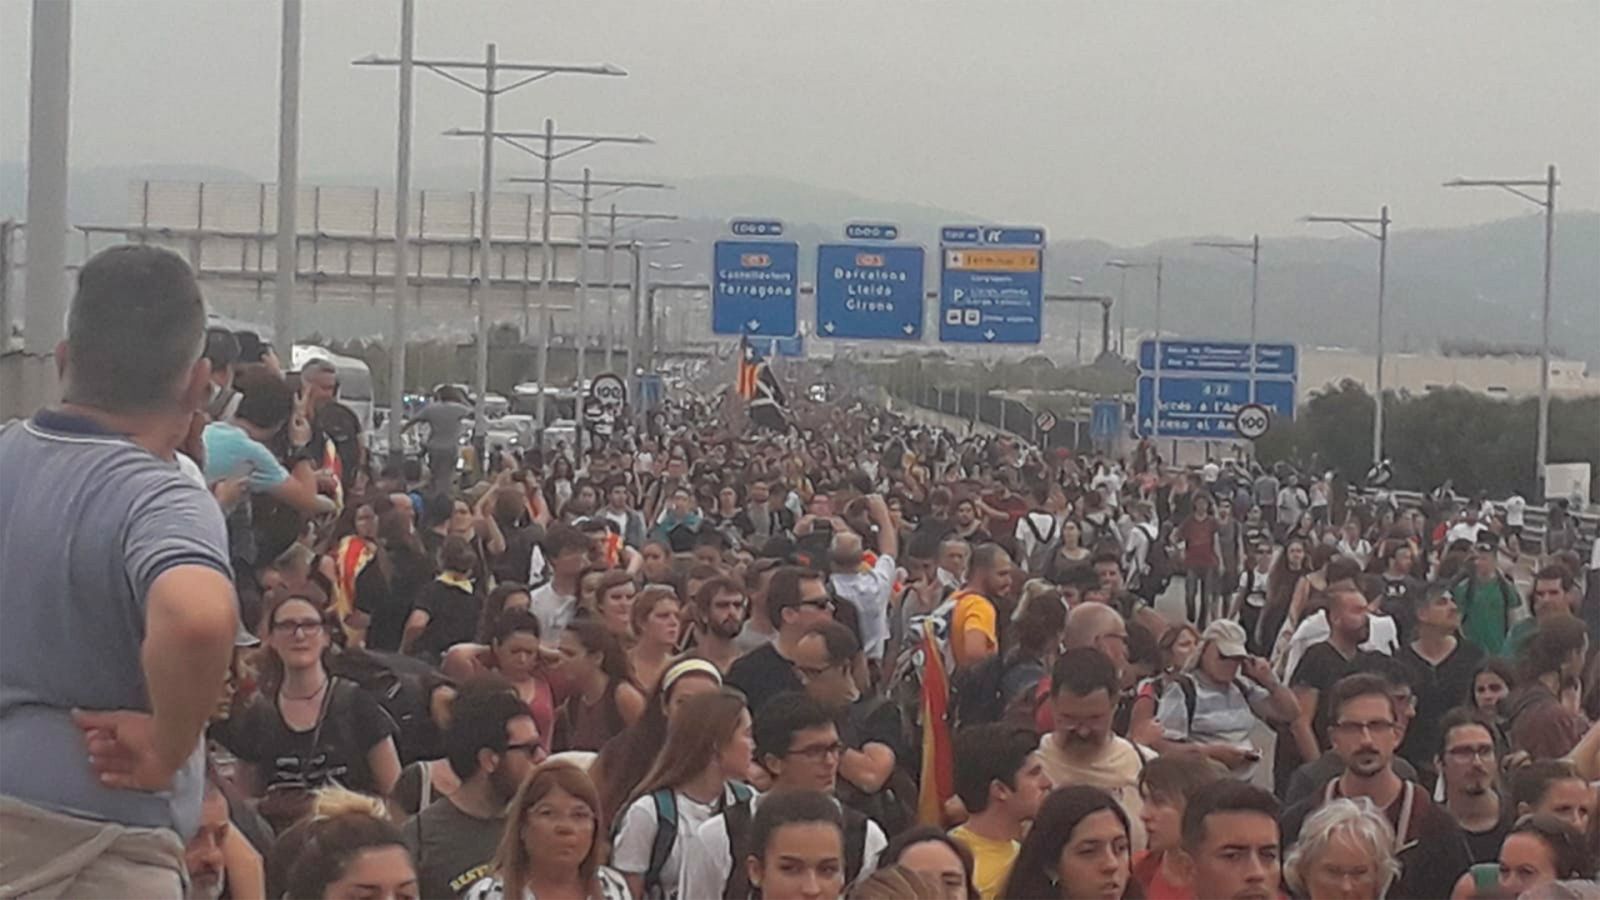 Sentencia 'procés' - Las protestas independentistas por la sentencia del 'procés' cortan carreteras y afectan al aeropuerto de El Prat